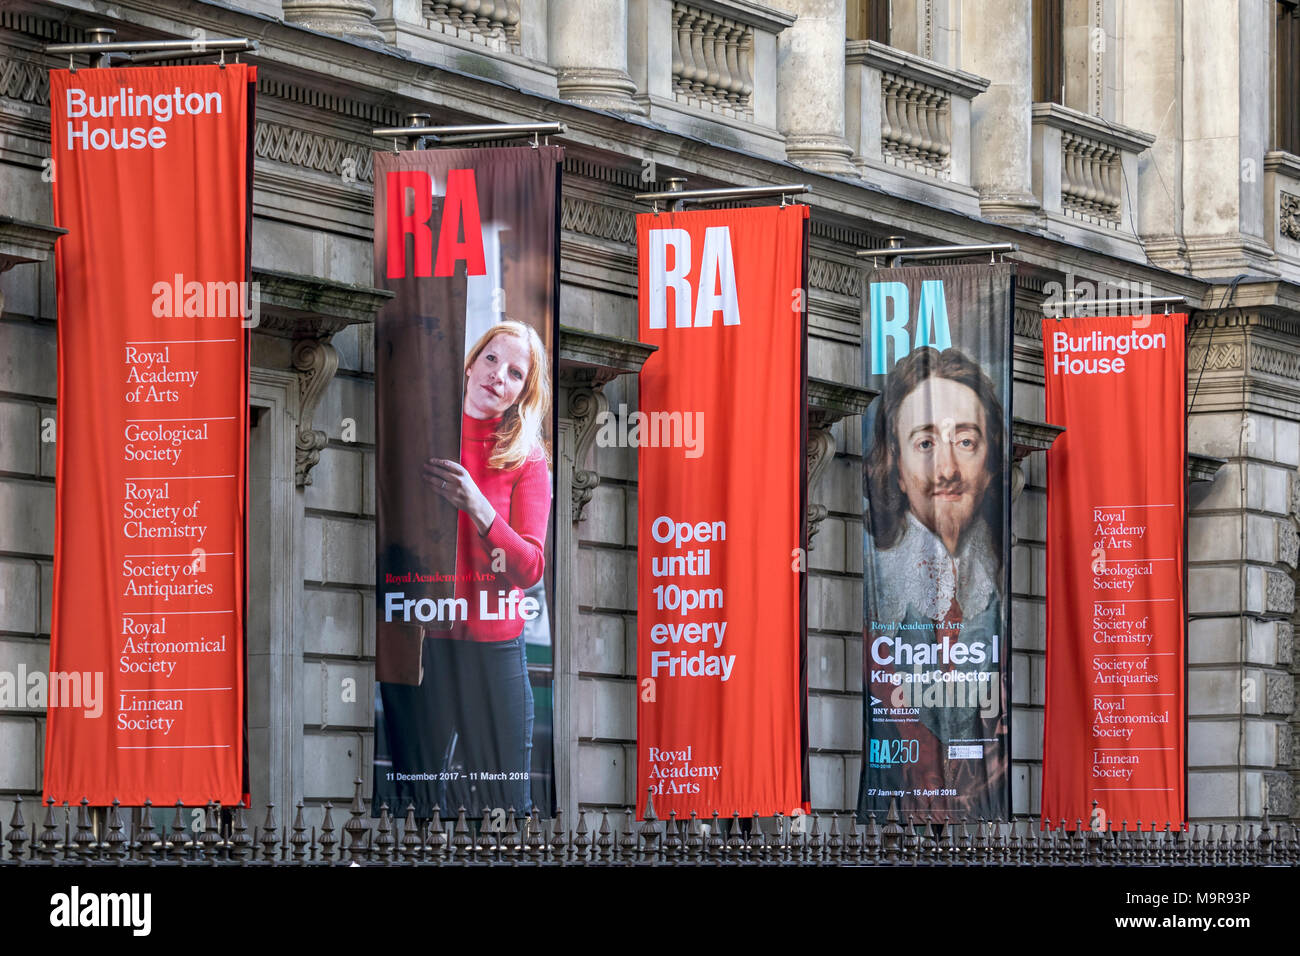 LONDRA, UK - 08 MARZO 2018: Banner colorati per la Royal Academy of Arts al di fuori della Burlington House Foto Stock